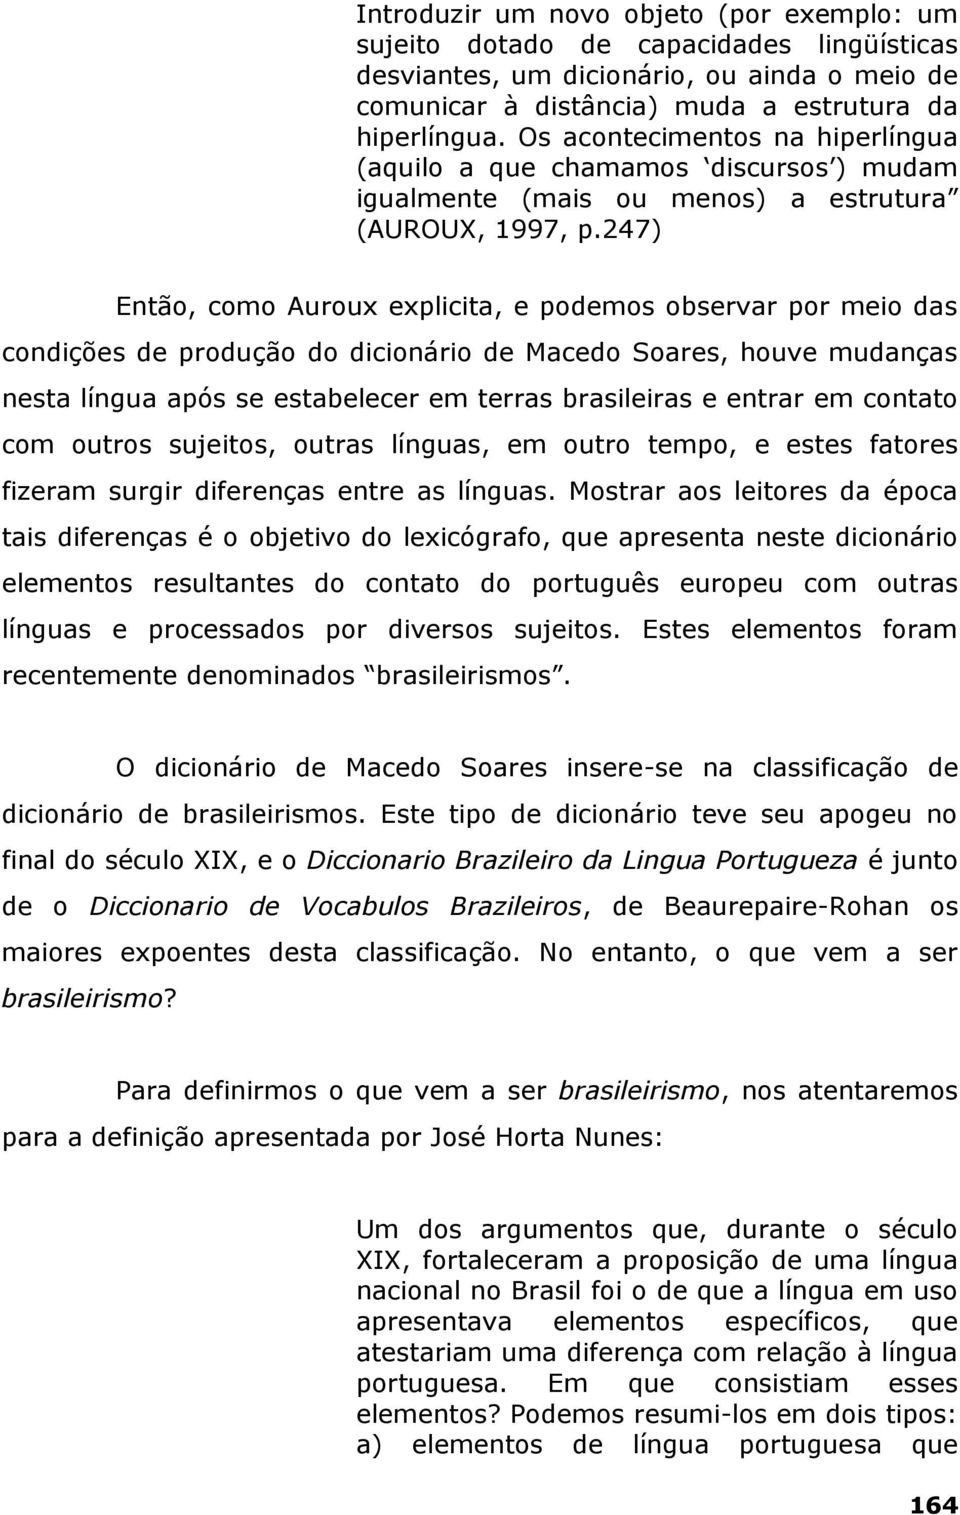 247) Então, como Auroux explicita, e podemos observar por meio das condições de produção do dicionário de Macedo Soares, houve mudanças nesta língua após se estabelecer em terras brasileiras e entrar